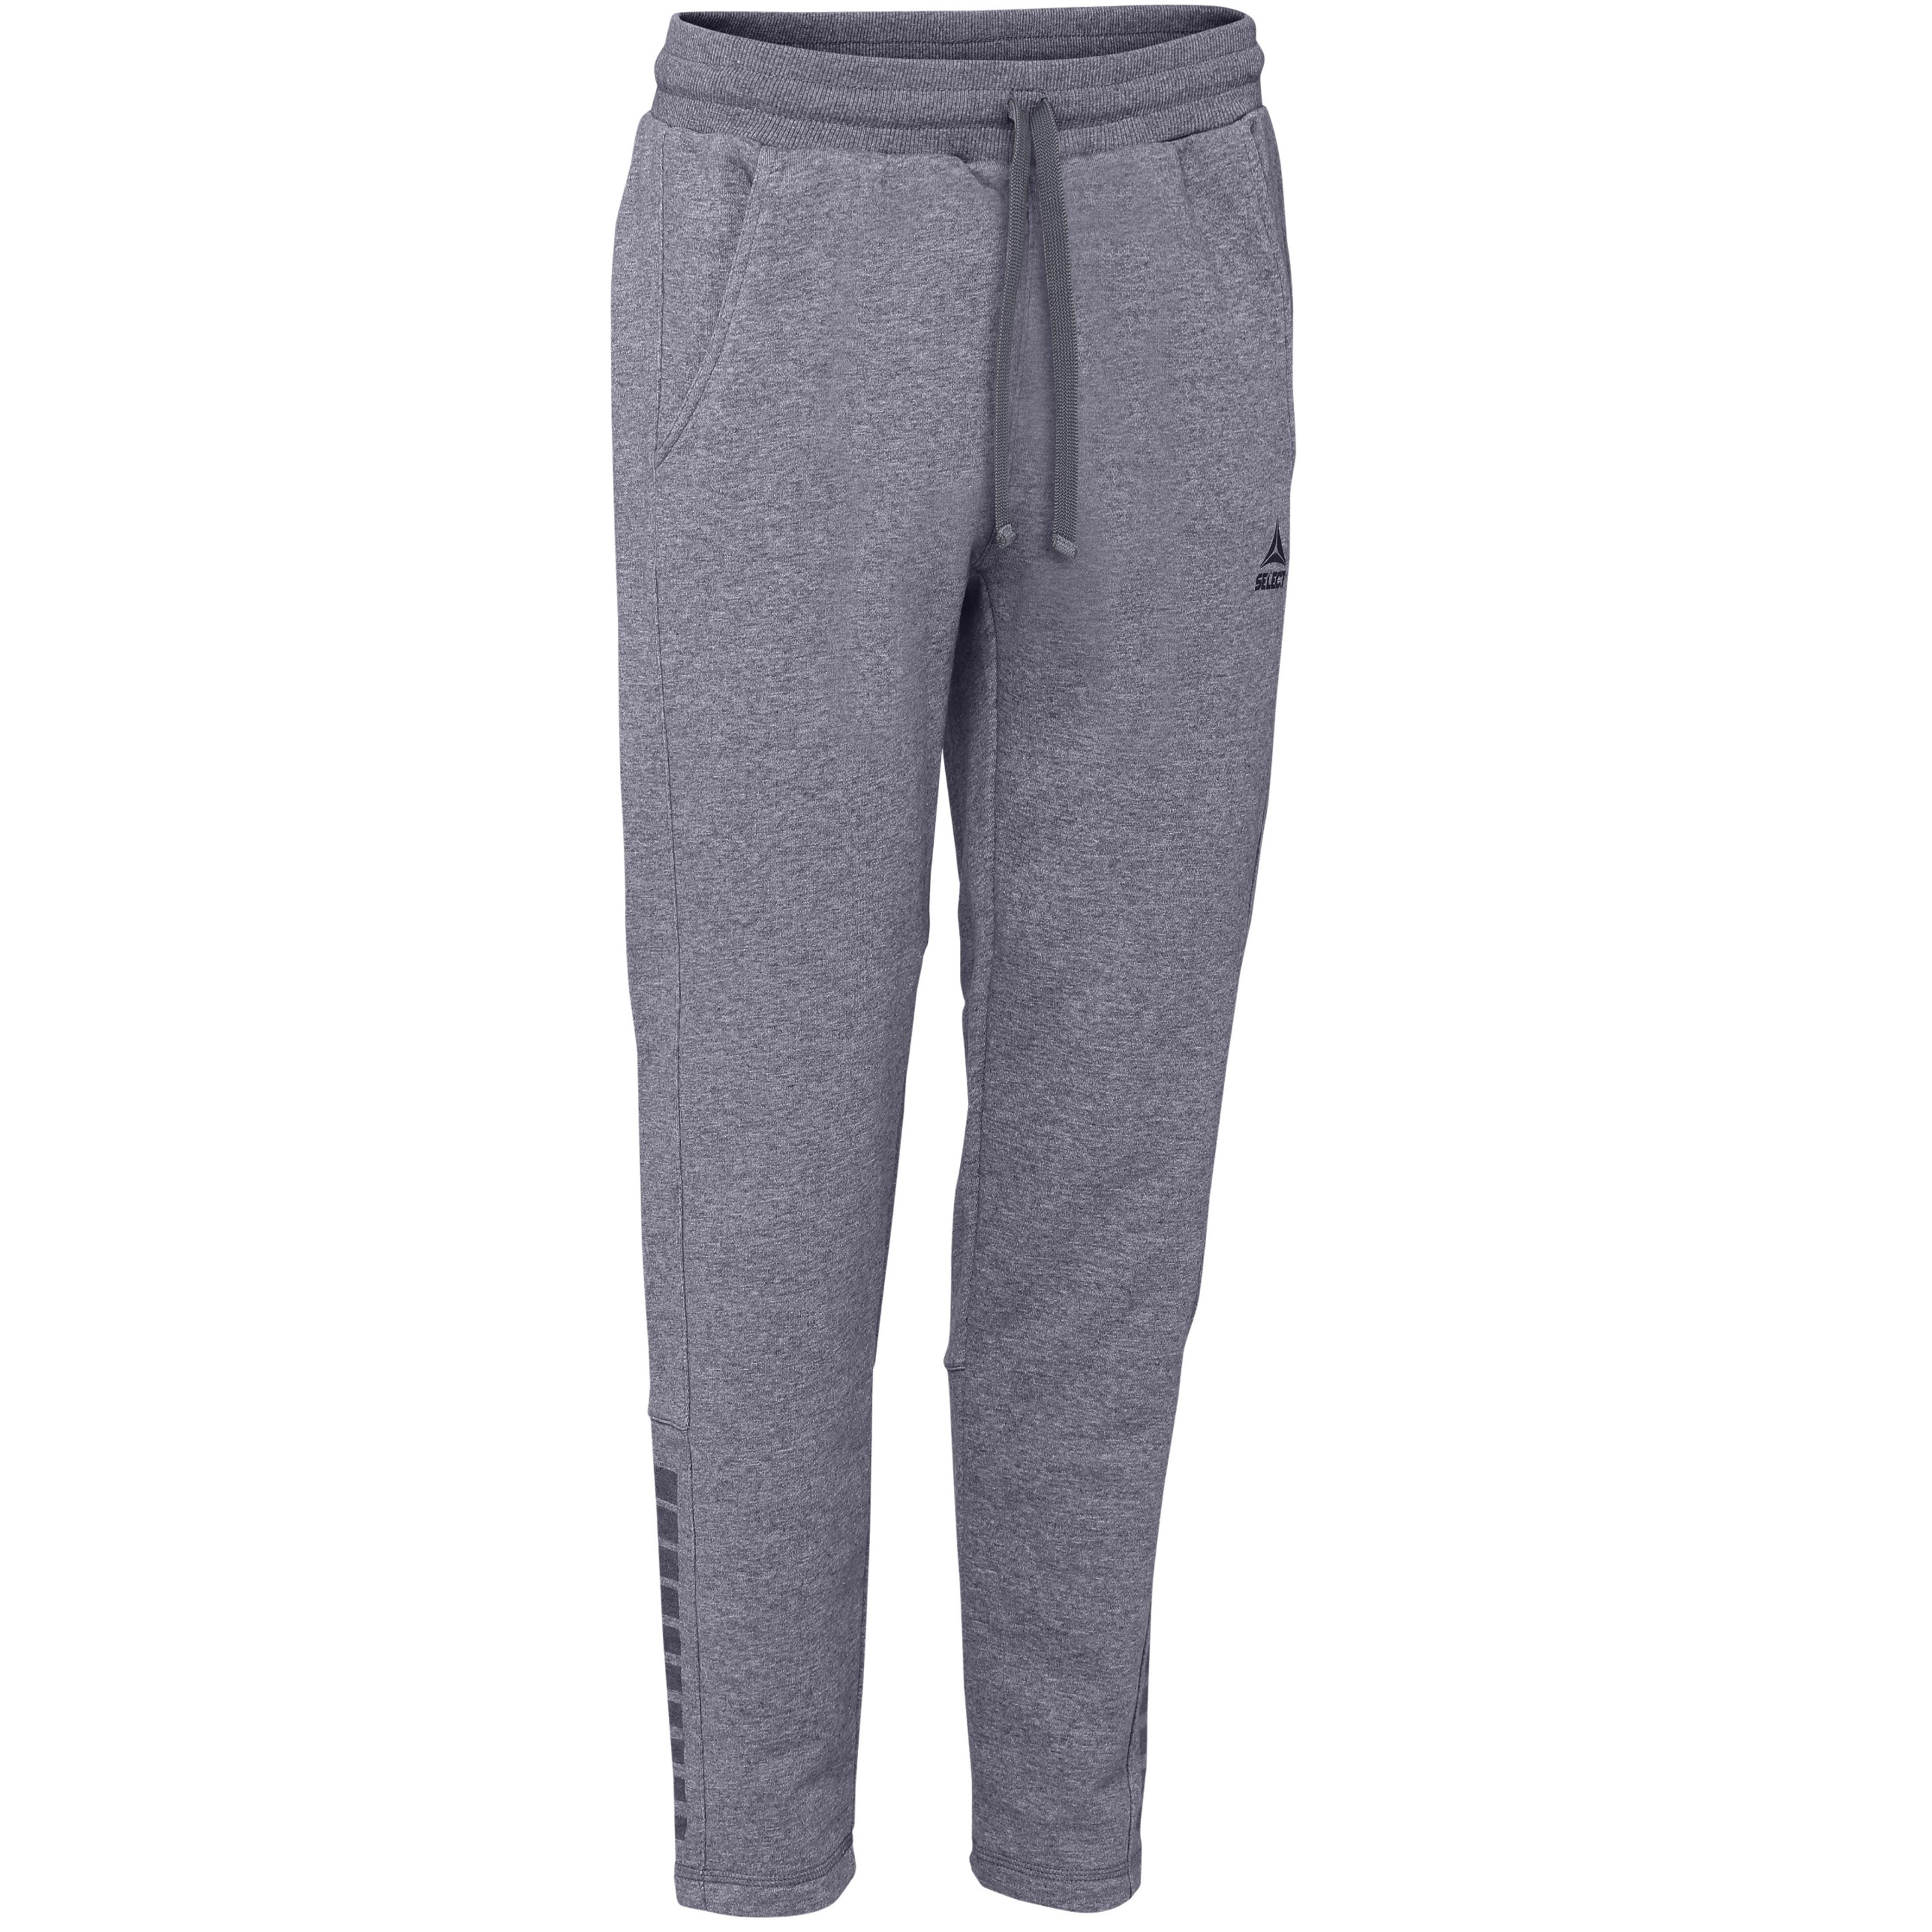 Pantalones Sweatshirt Select Torino - gris - 